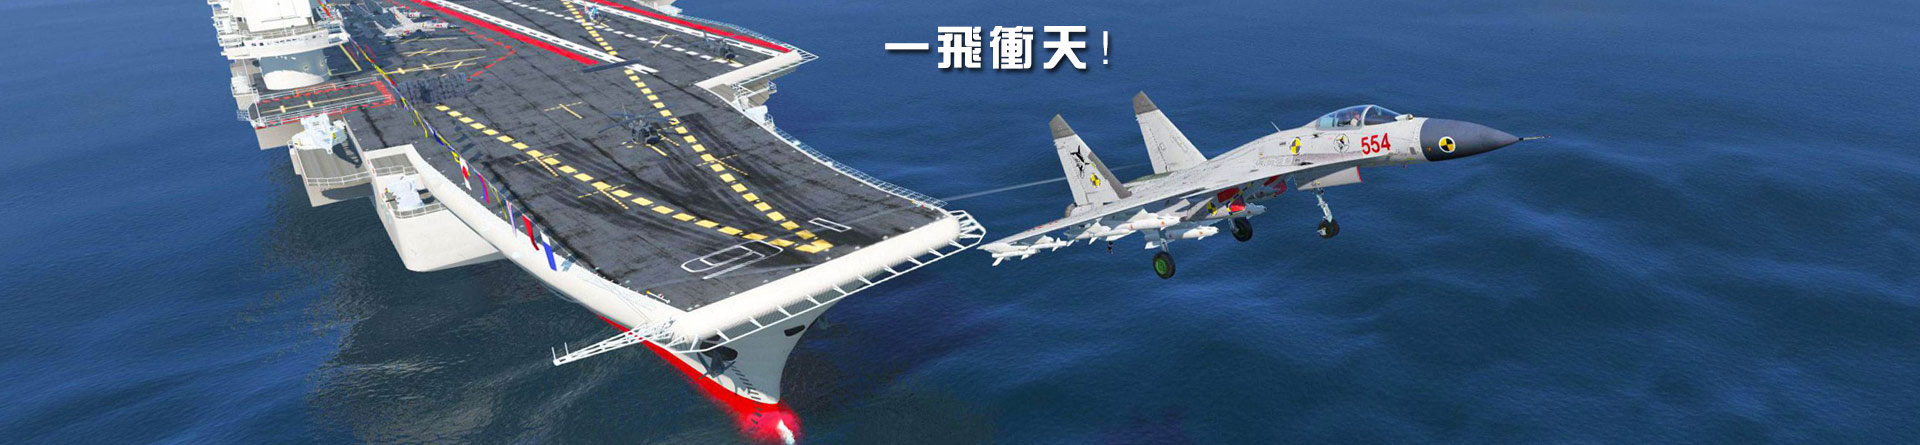 军事模型军舰模型飞机模型坦克模型导弹模型火箭模型航天模型